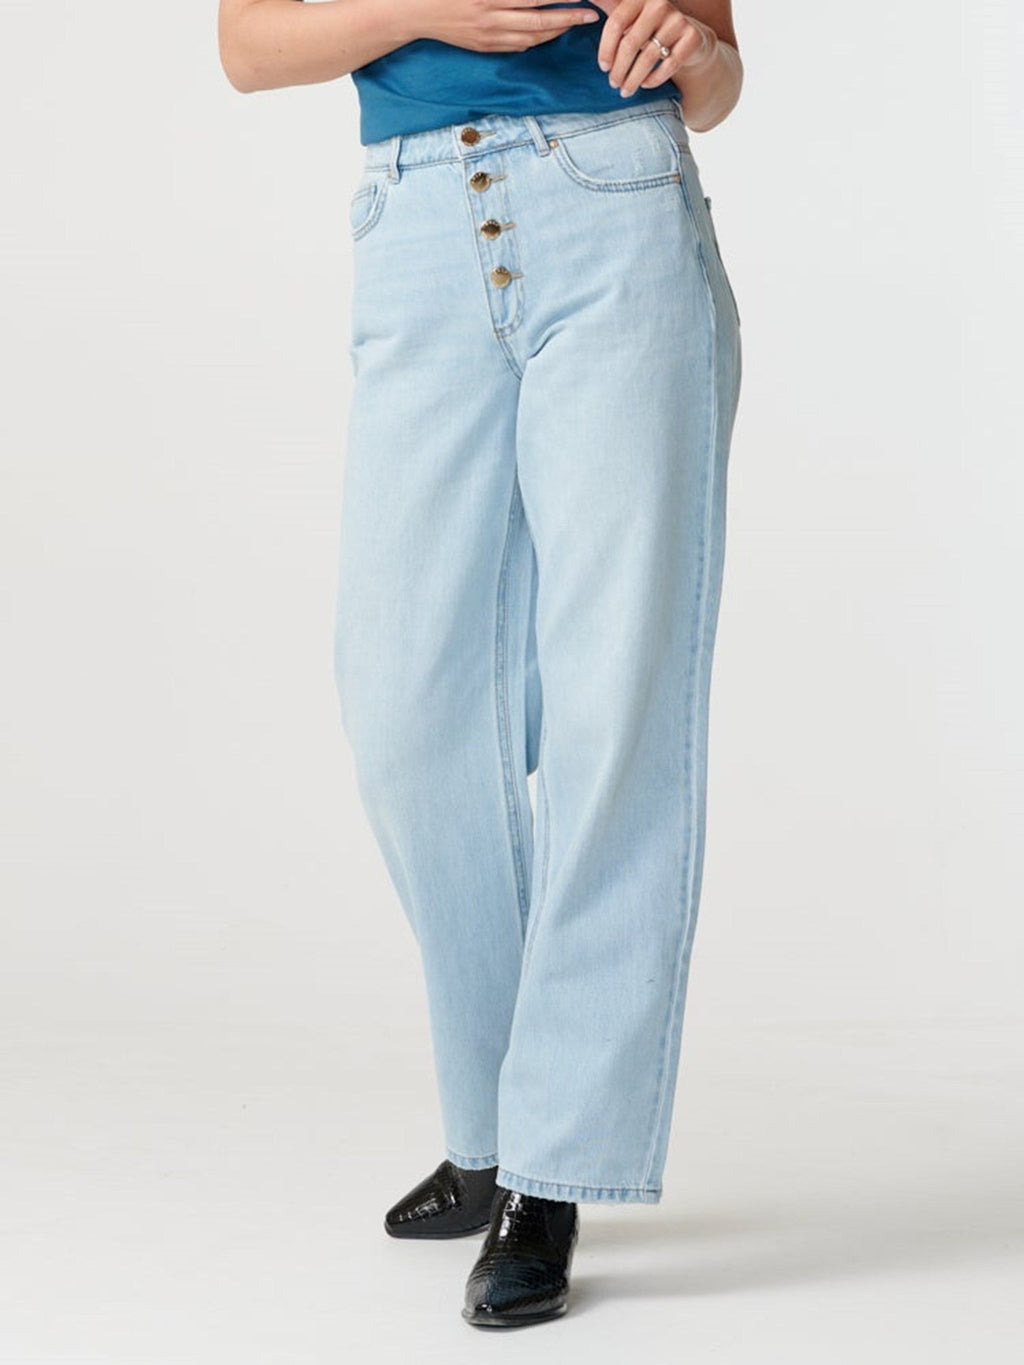 Juicy Jeans (weites Bein) - helles Denimblau